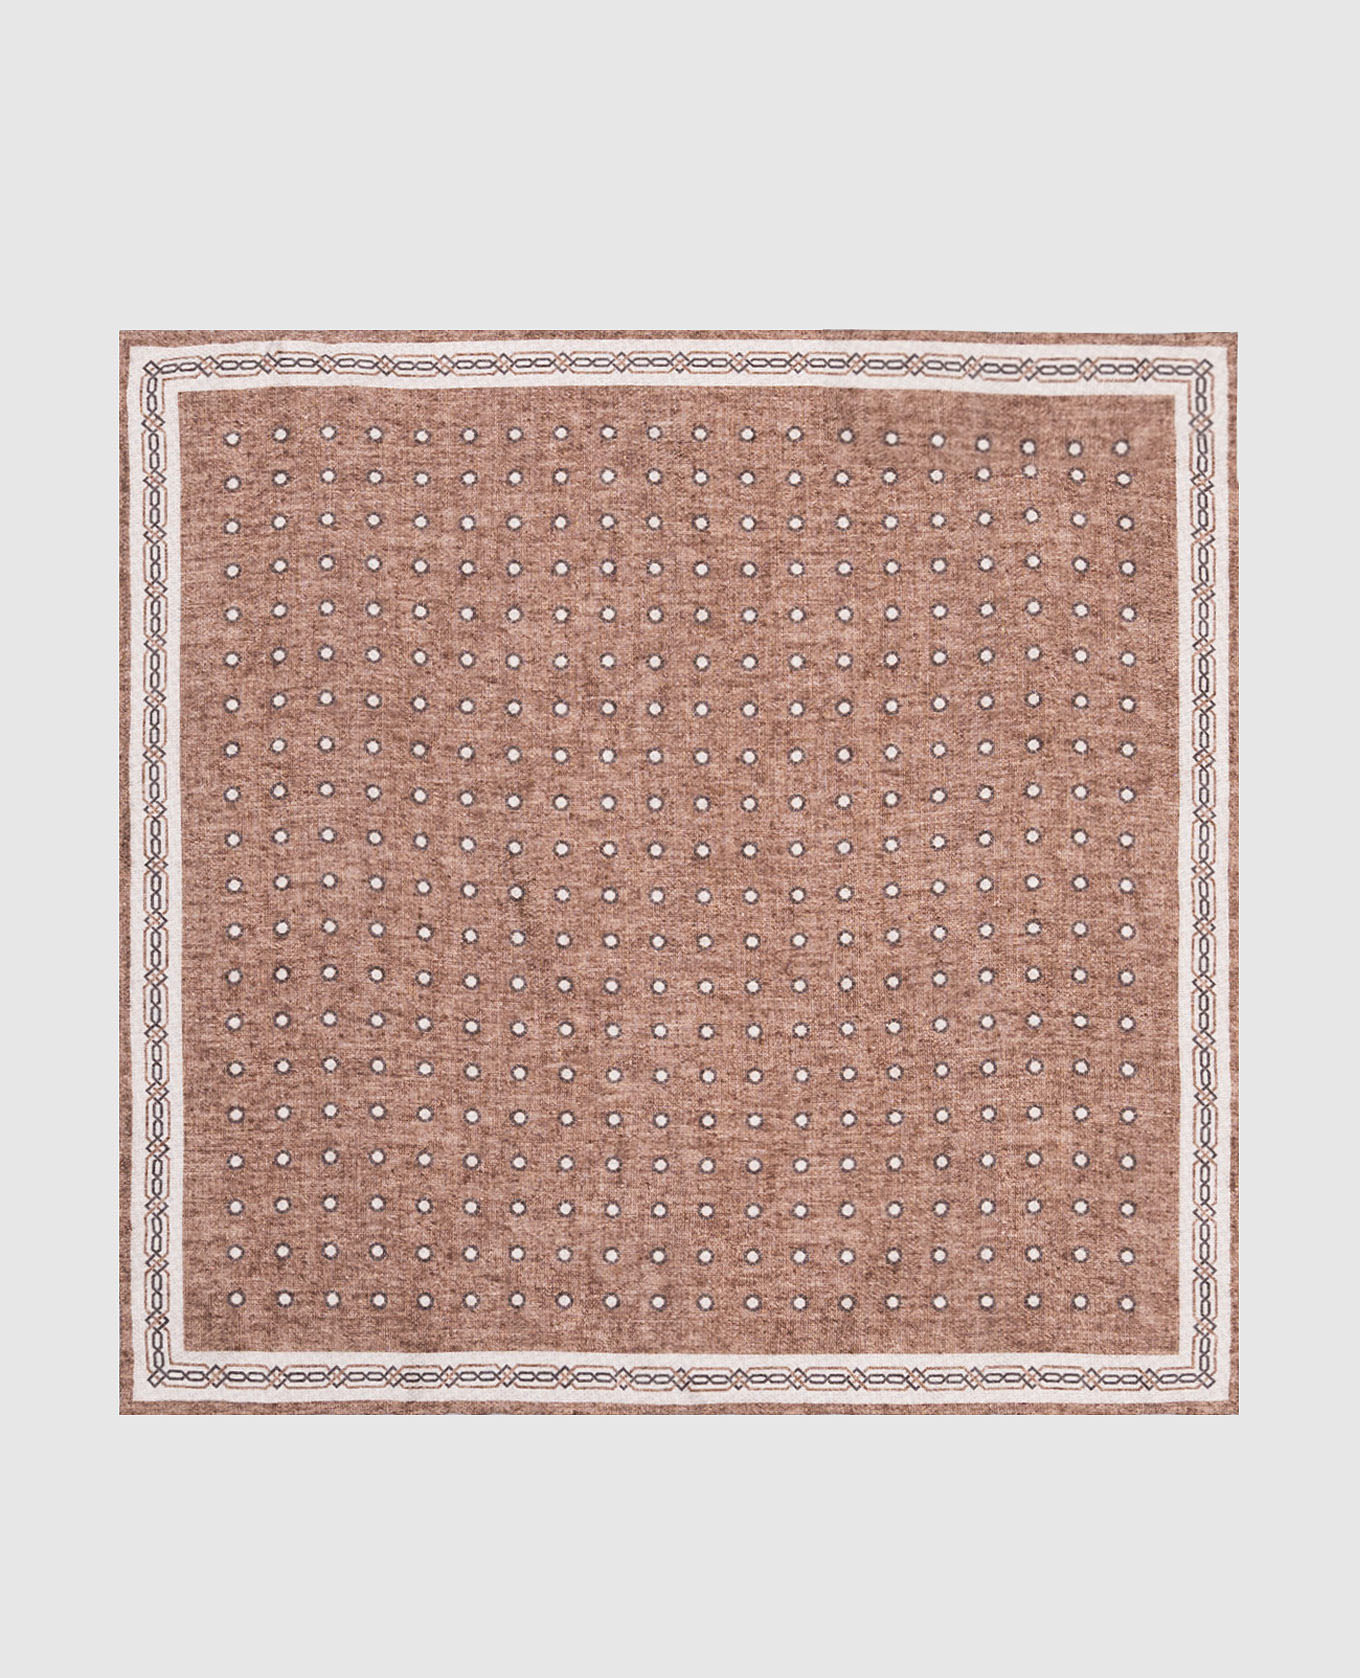 Коричневый двухсторонний платок-паше из шелка в геометрический узор.